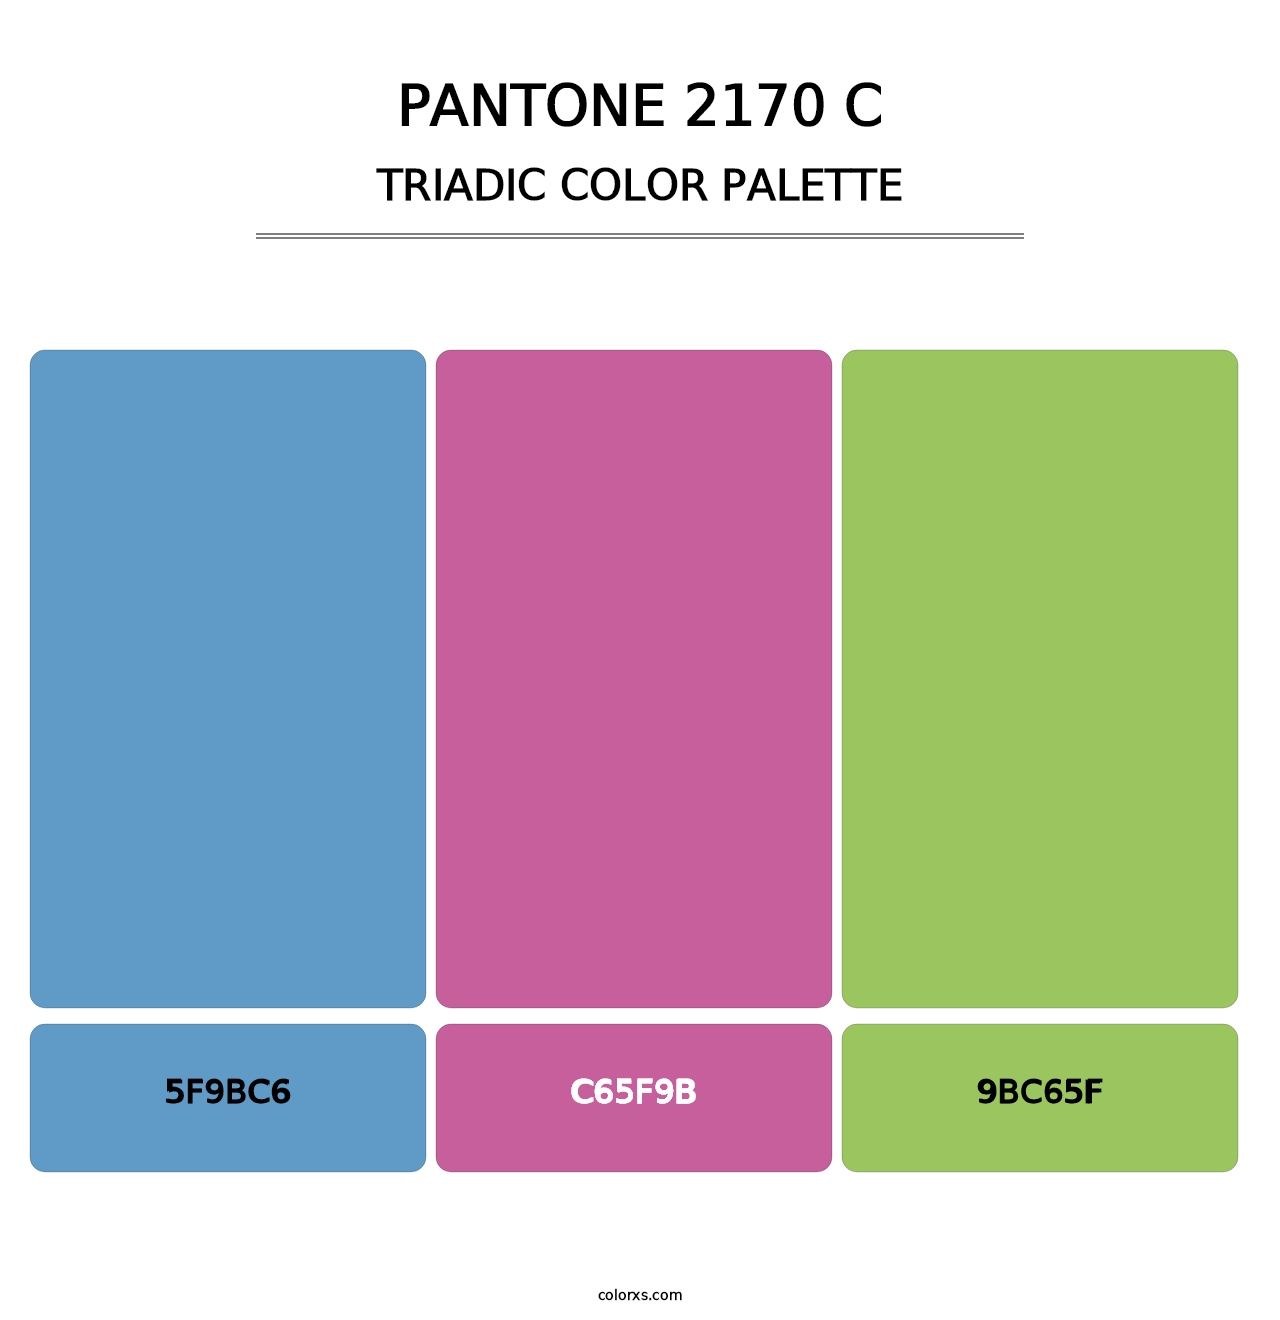 PANTONE 2170 C - Triadic Color Palette